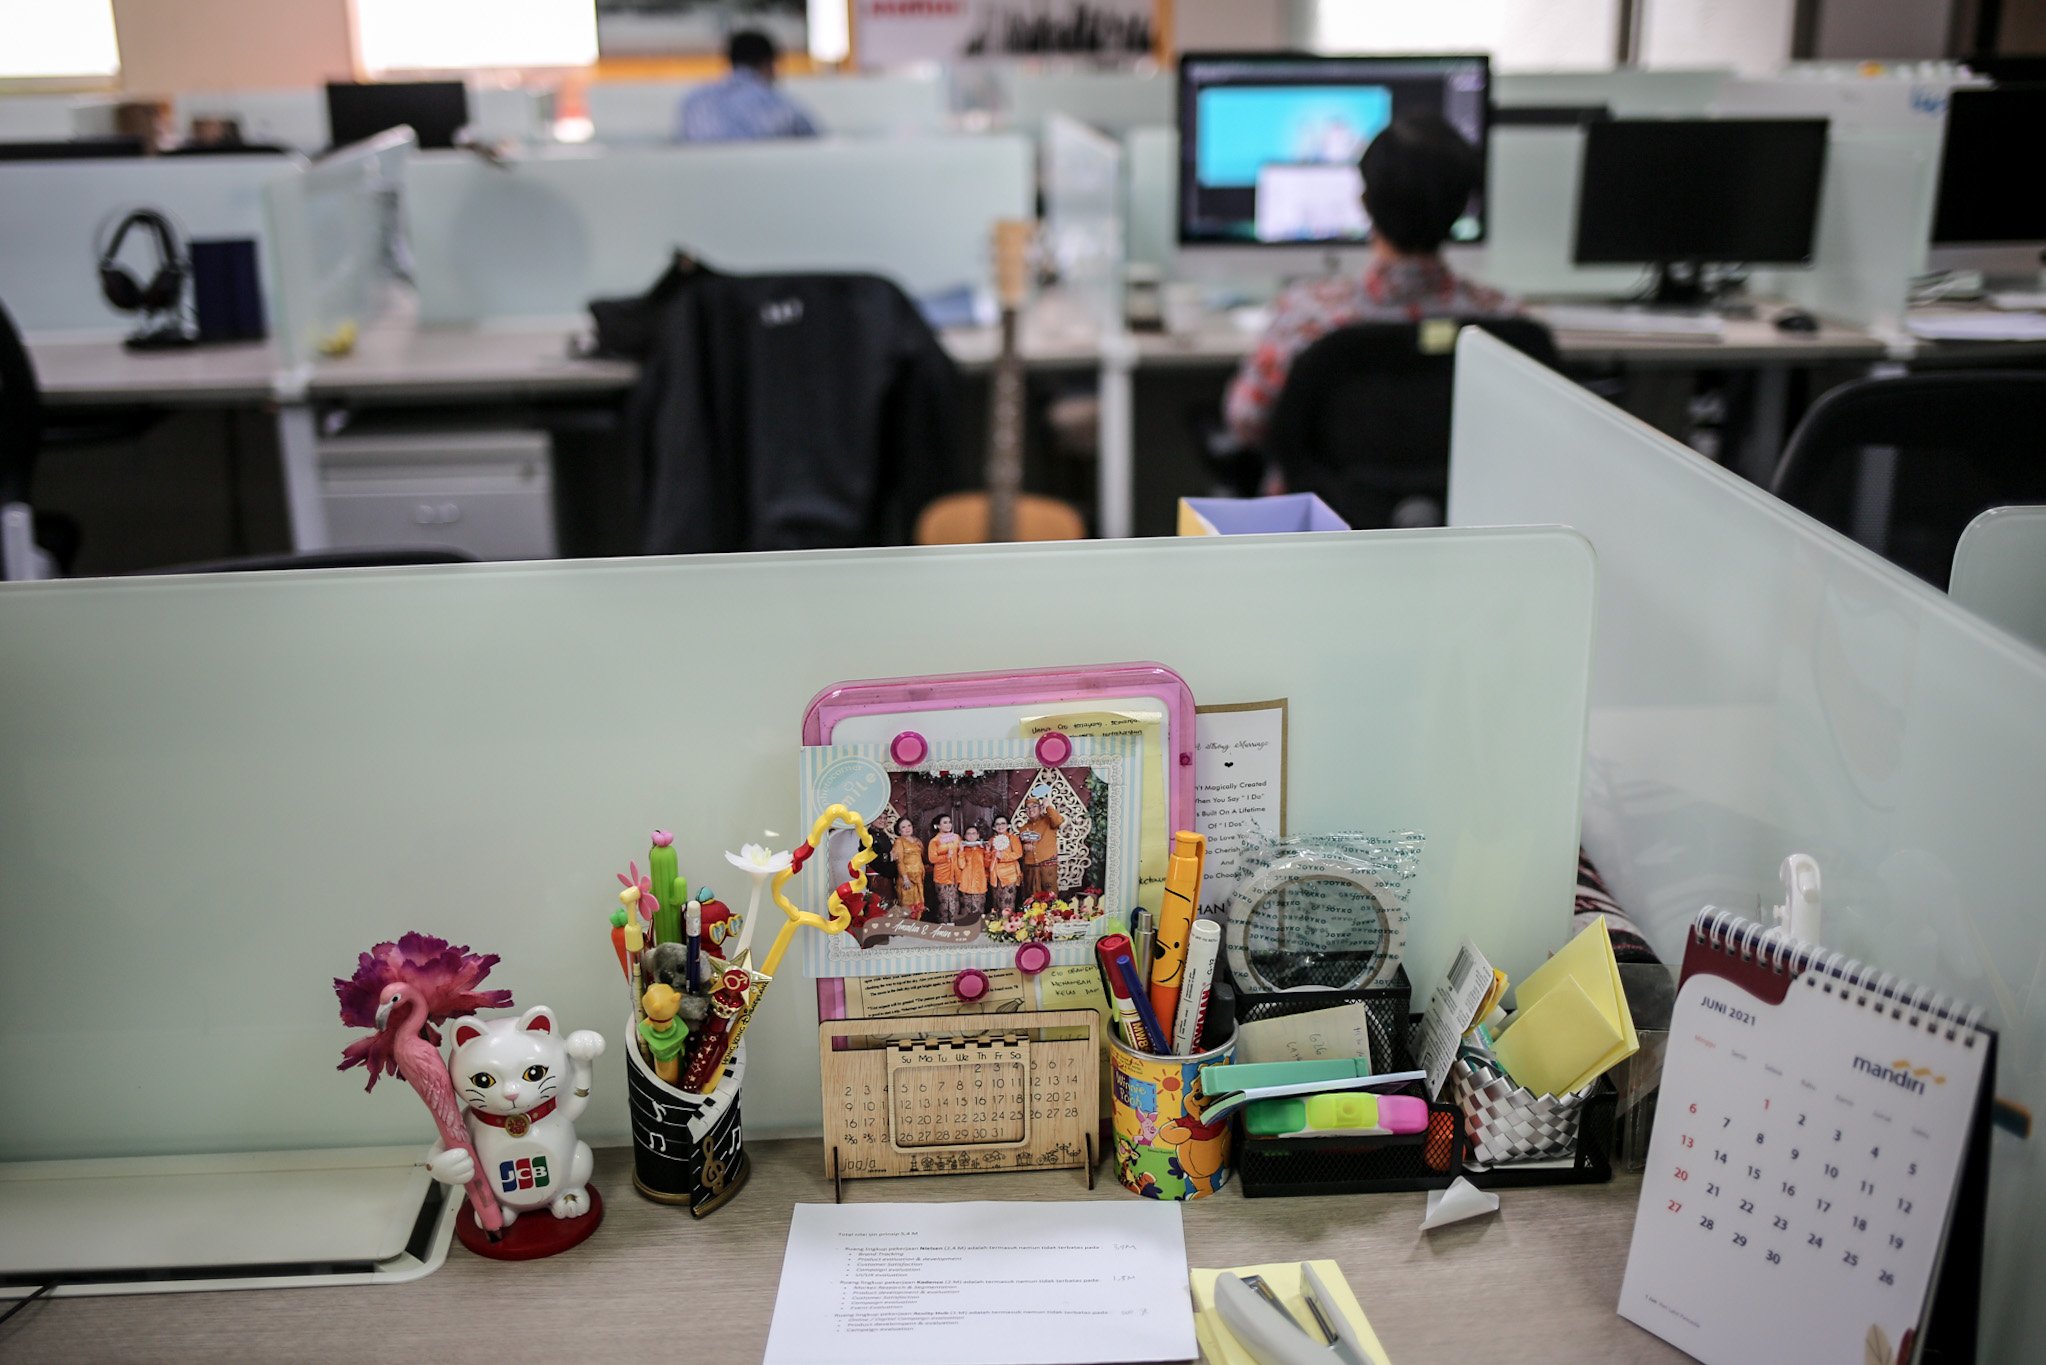 Sejumlah pekerja beraktivitas di ruang kerja di masa Penerapan Pembatasan Kegiatan Masyarakat (PPKM) Darurat di kantor perbankan wilayah Sudirman Central Business District (SCBD), Senayan, Kebayoran Baru, Jakarta Selatan, Senin, (5/7/2021). Selama penerapan PPKM Darurat sektor esensial diberlakukan 50 persen maksimum karyawan Work From Office (WFO) atau bekerja dari kantor dengan menerapkan protokol kesehatan. Sementara sektor non-esensial menerapkan 100 persen Work From Home (WFH) atau bekerja dari rumah.